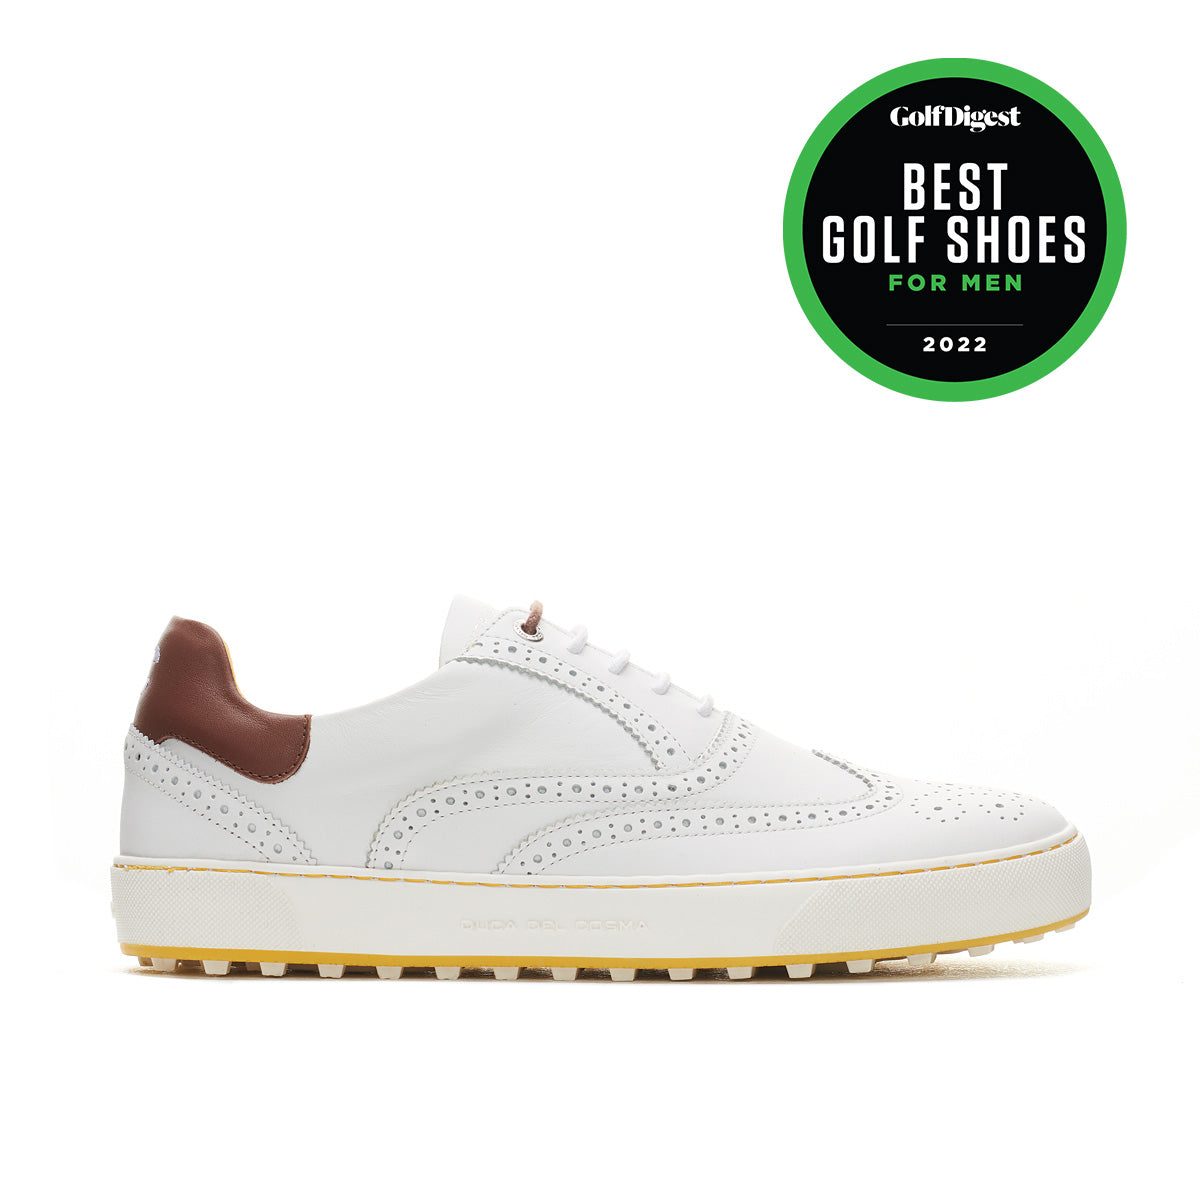 Enig med Efterligning ingeniørarbejde Regent - White | Men's Golf Shoes – Duca del Cosma Golf